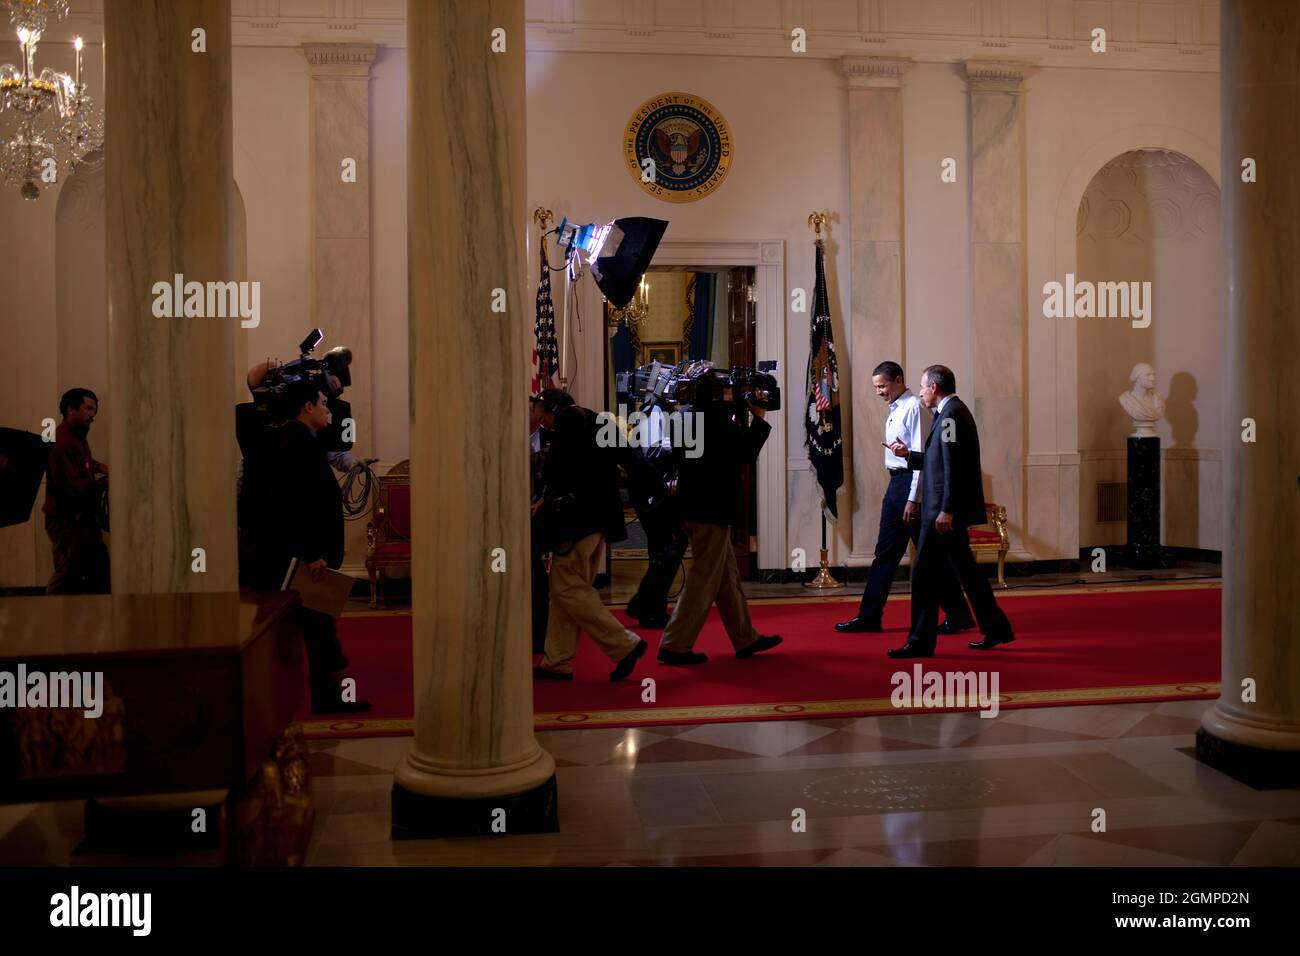 Le président accompagne Matt Lauer, hôte du salon d'aujourd'hui, à l'étage national de la Maison Blanche, le Super Bowl Sunday. Au cours de l'interview, le Président a discuté du plan de relance 2/1/09Photo officiel de la Maison Blanche par Pete Souza Banque D'Images